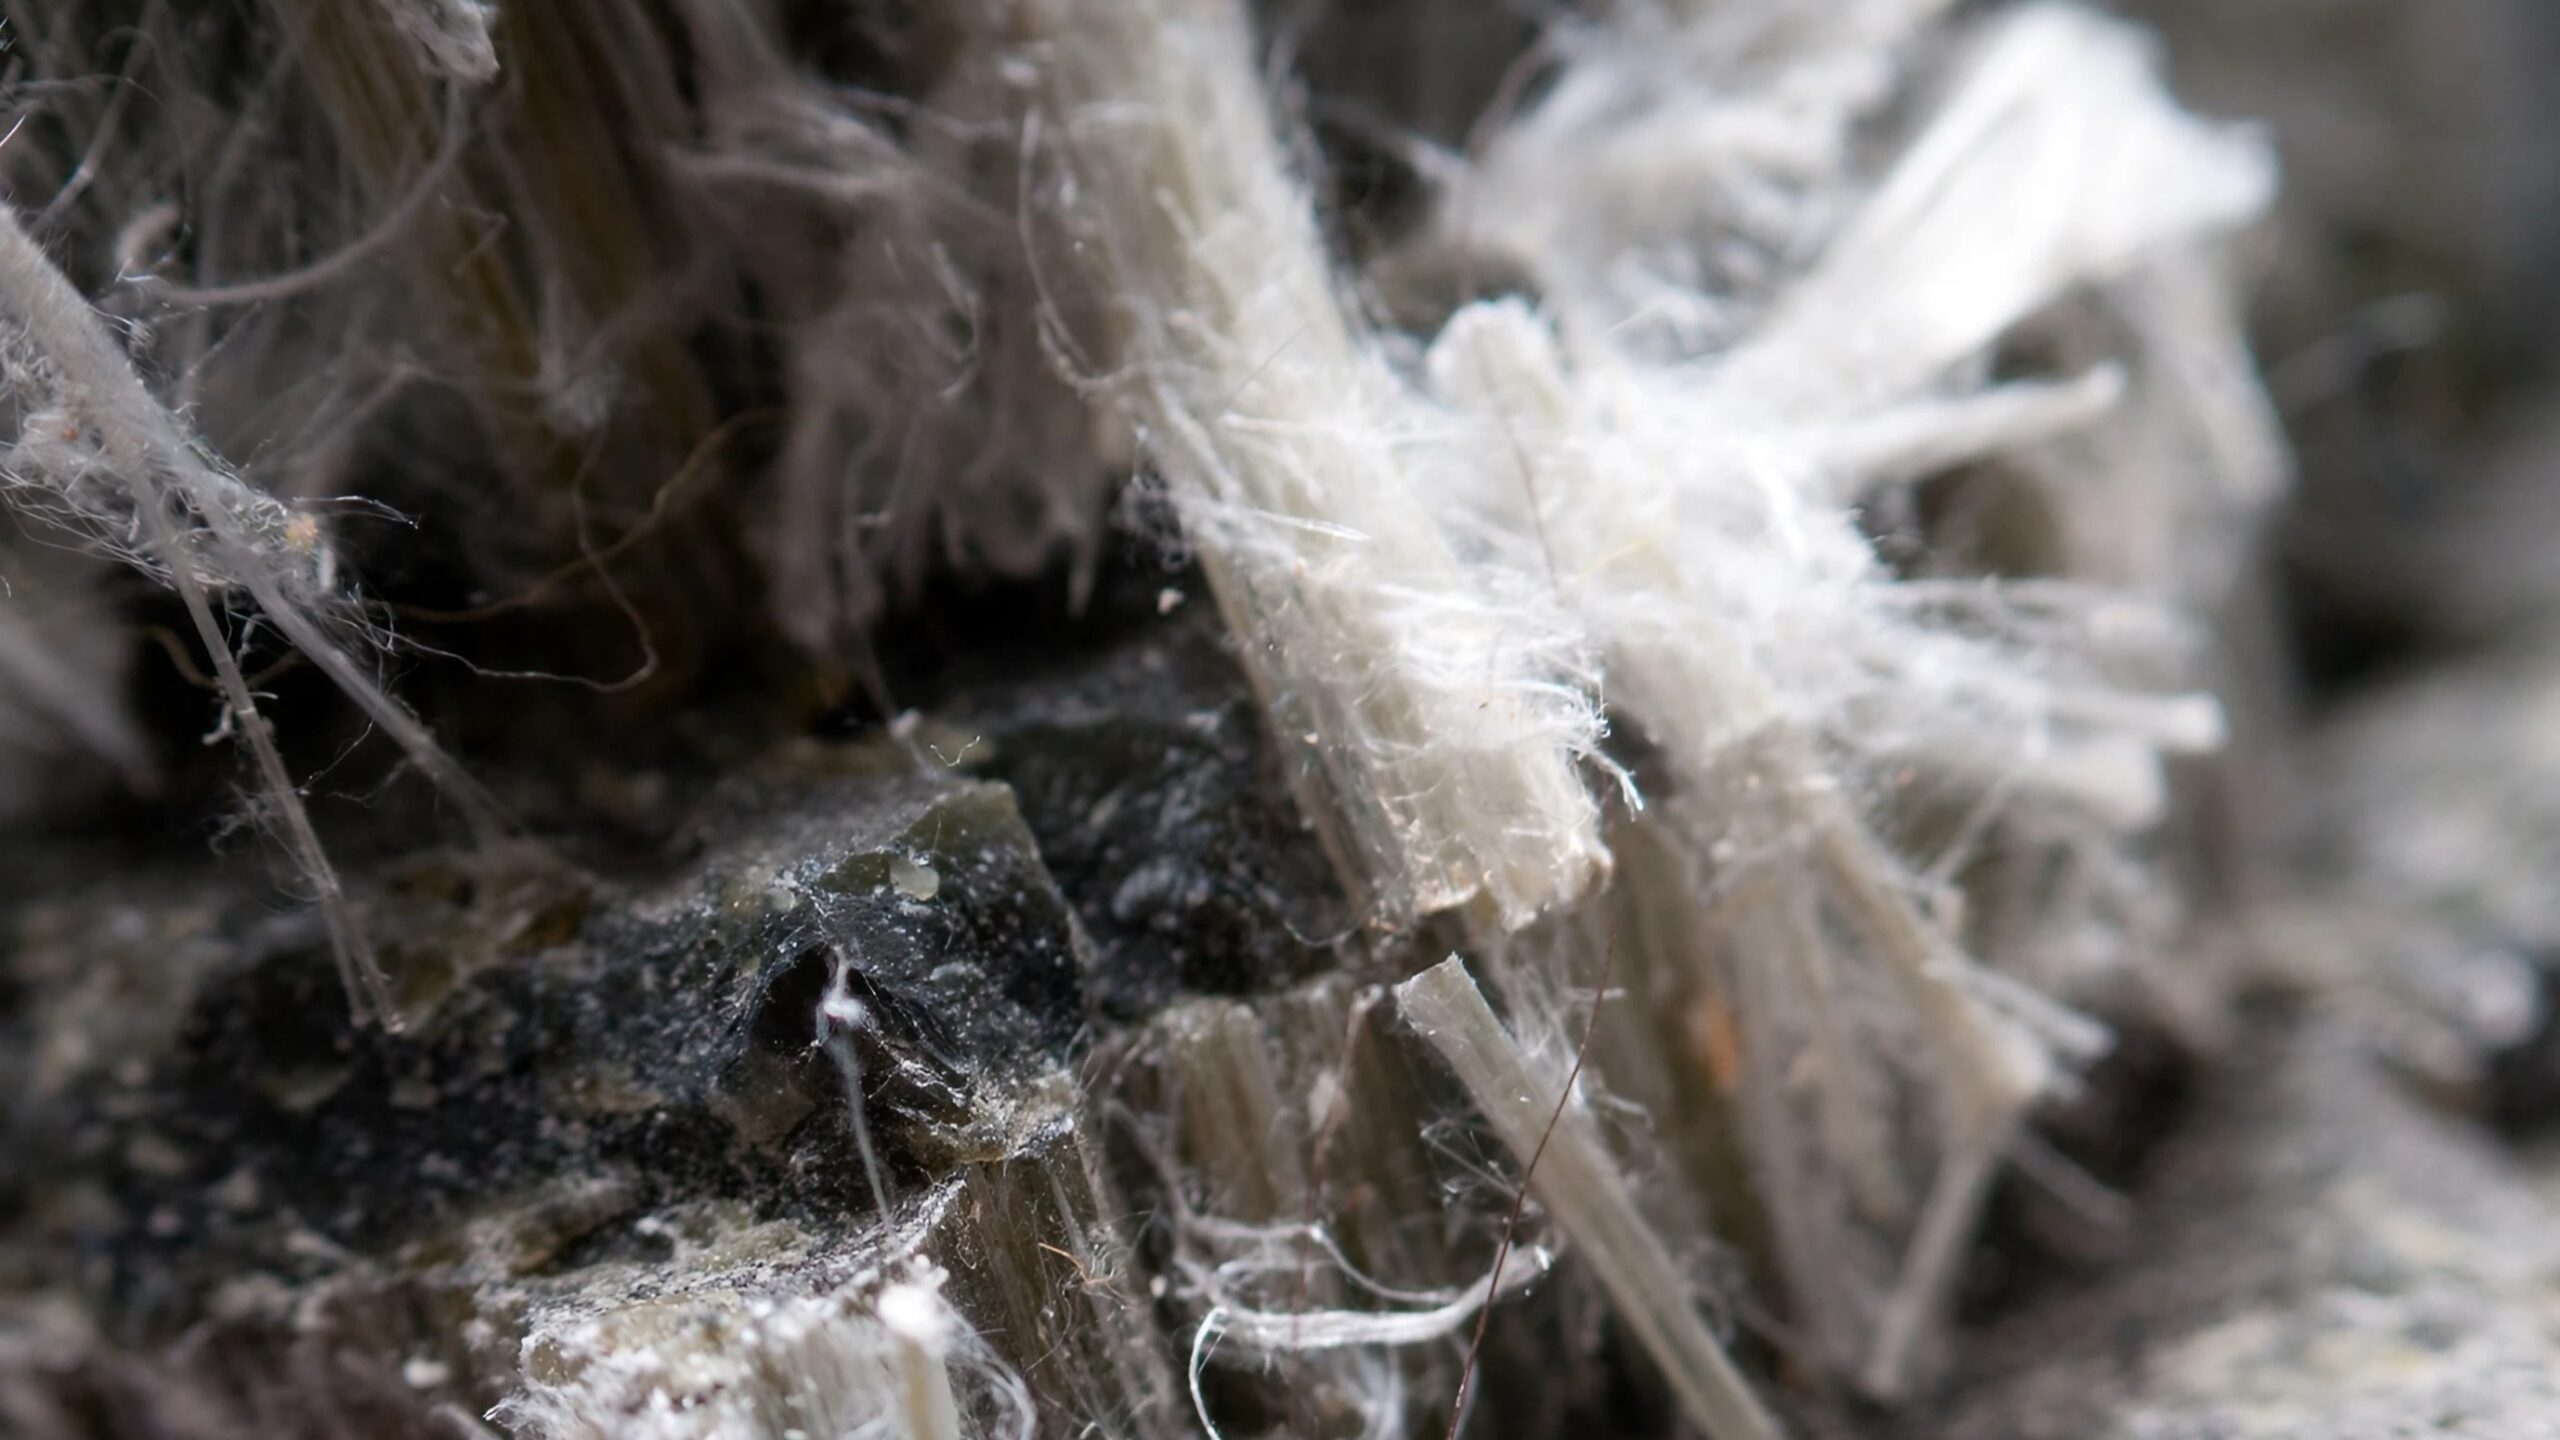 A close up of asbestos fibres